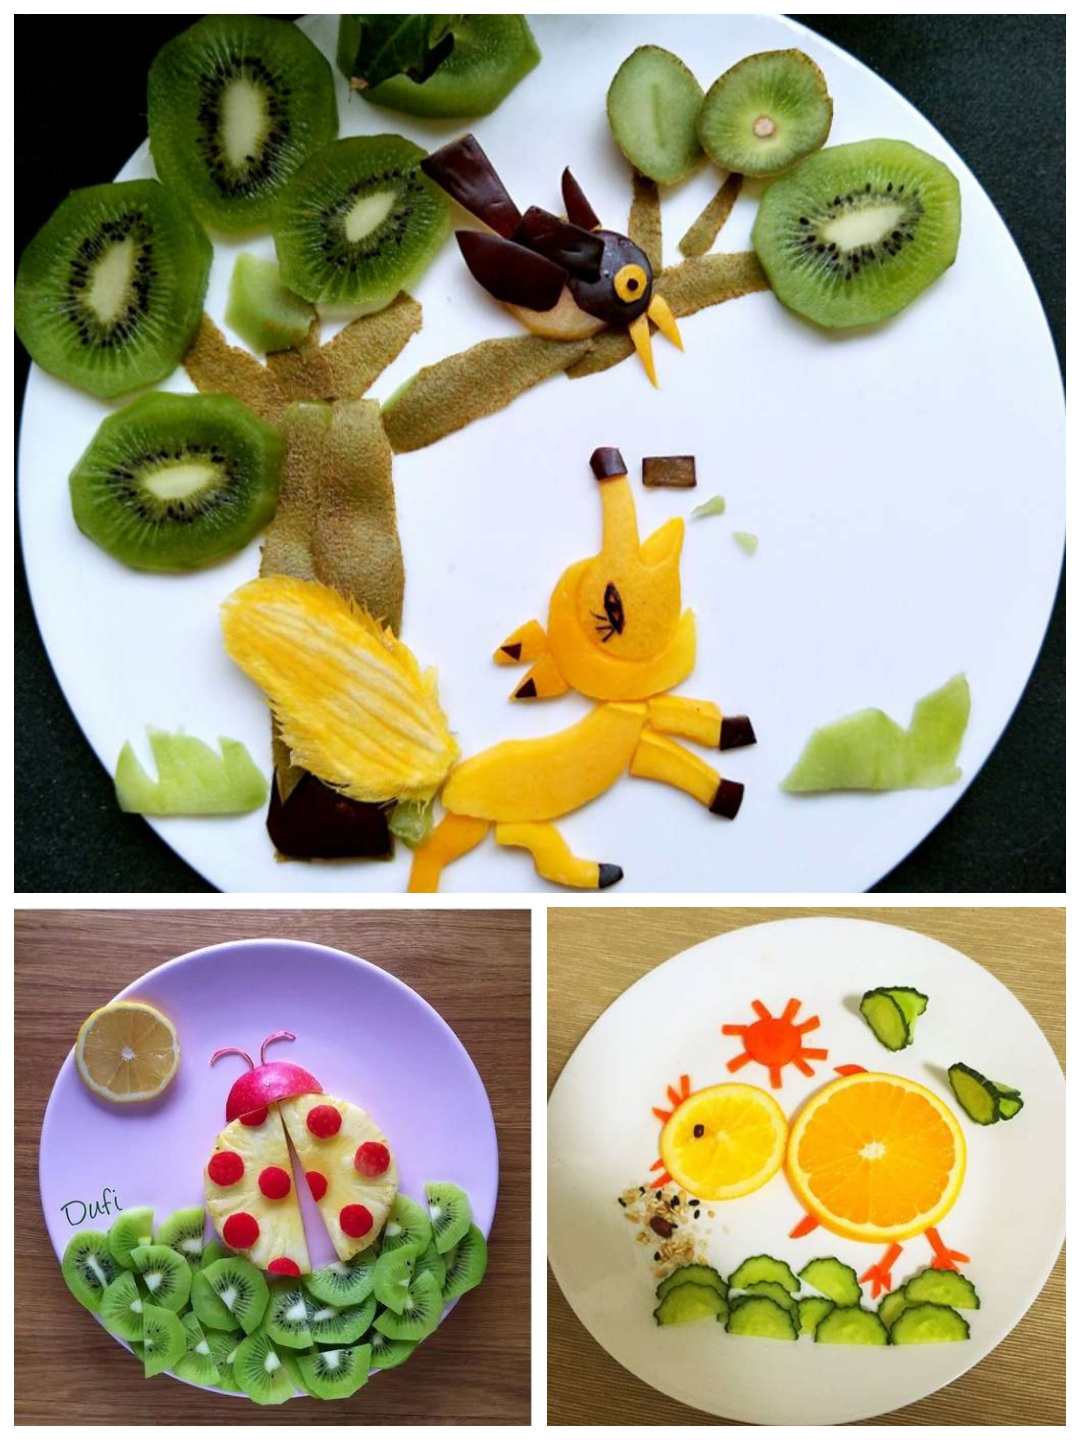 水果与艺术的亲密接触——水果拼盘大赛 - 广西贺州职业学院